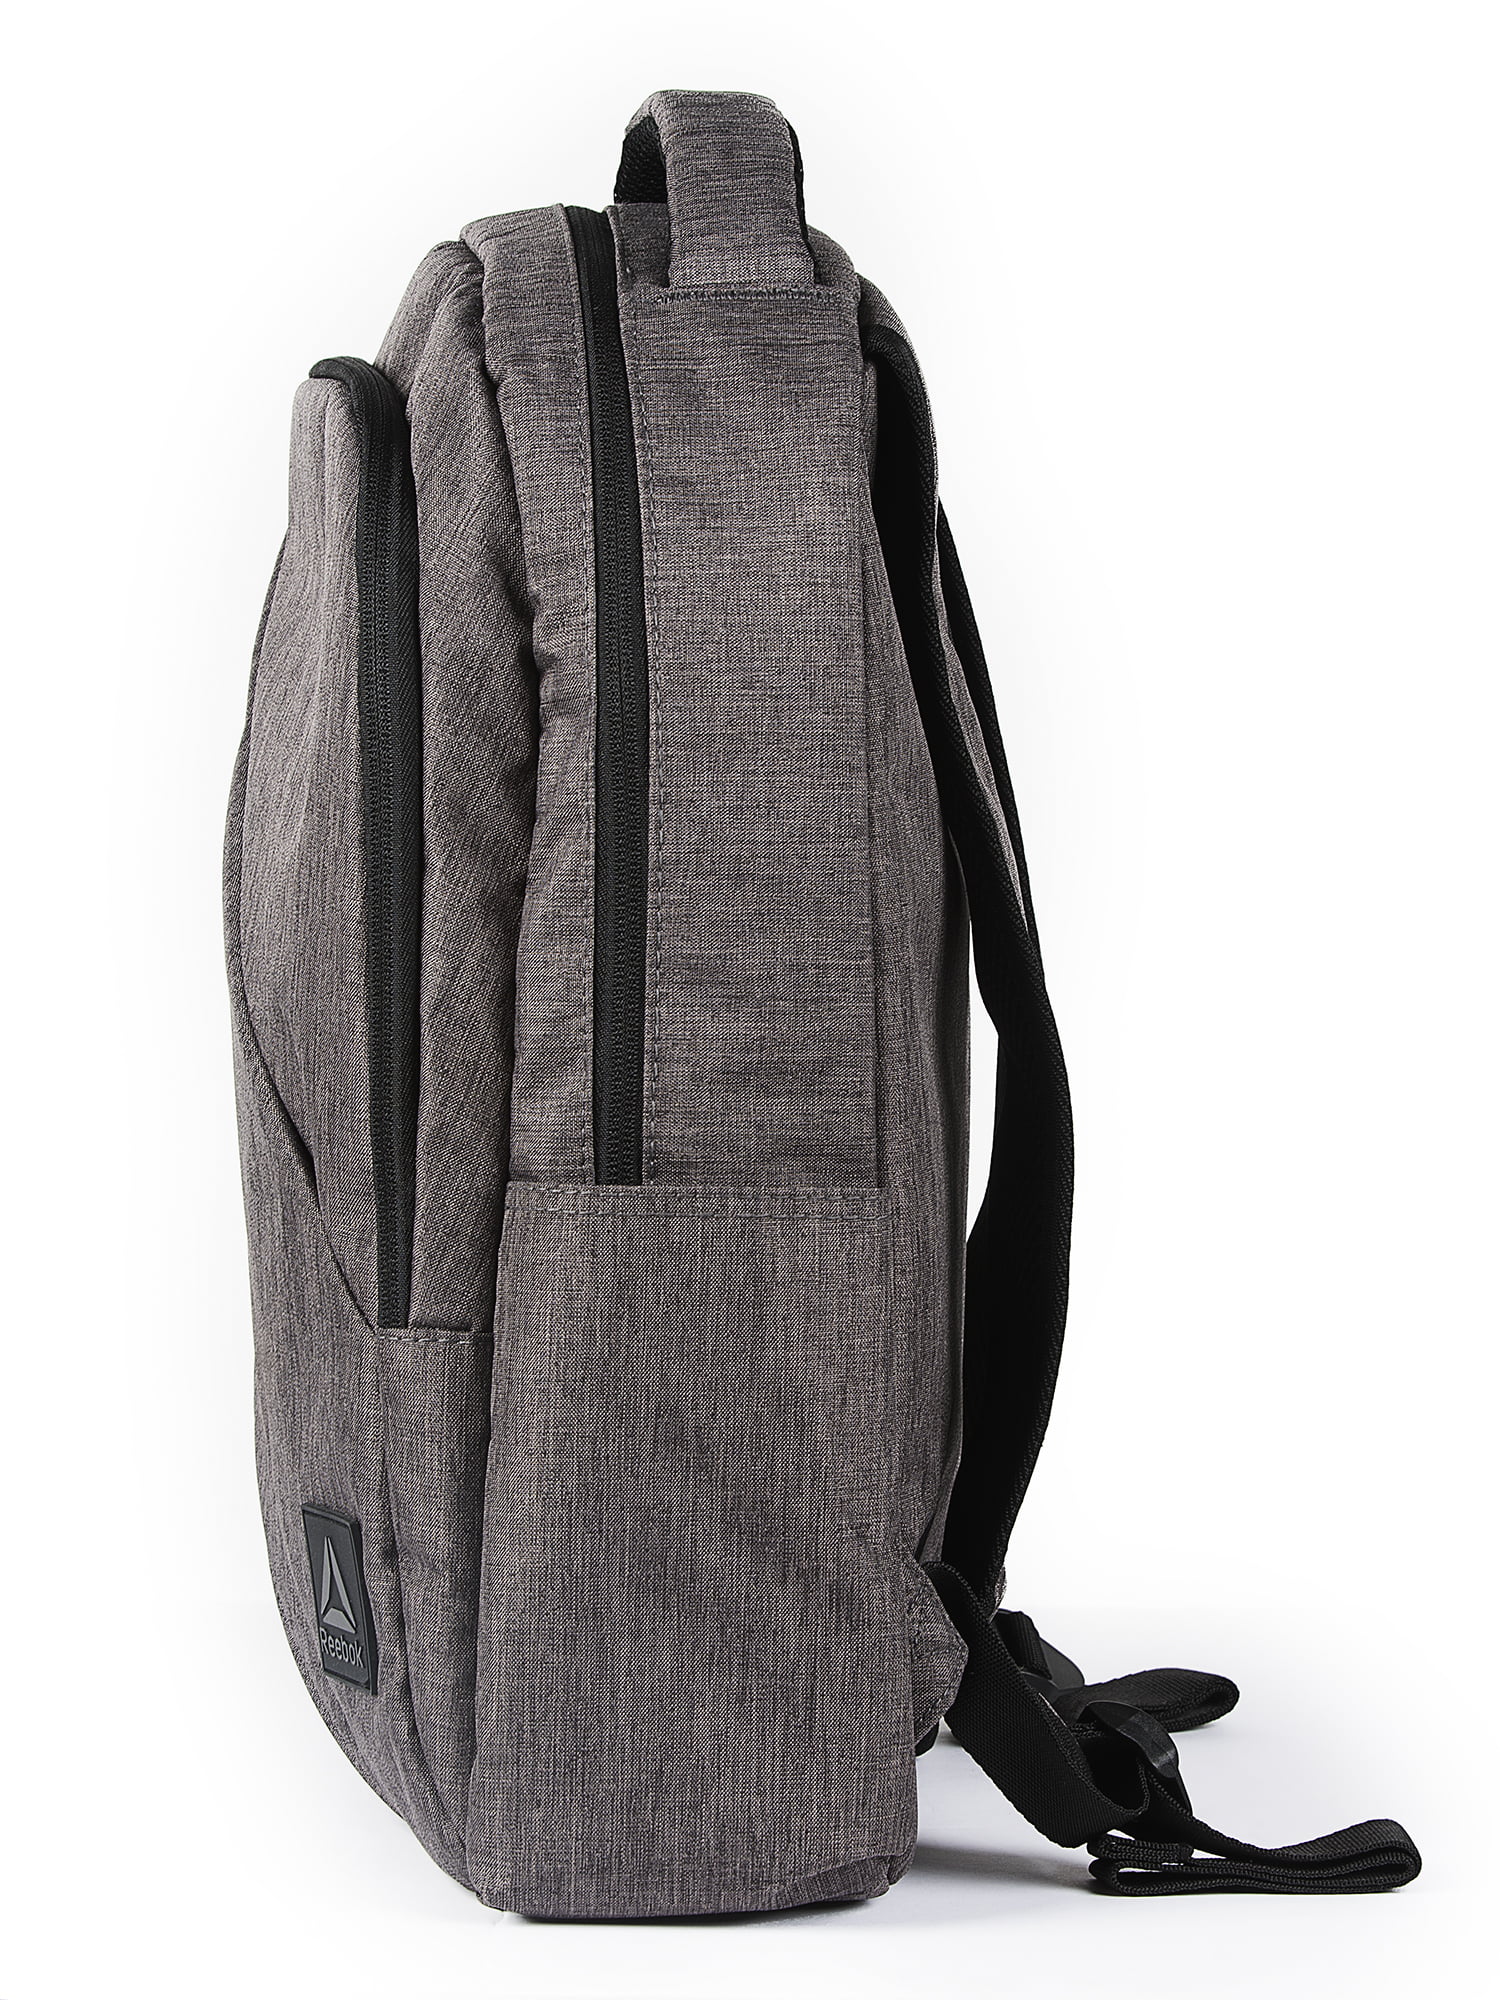 Reebok Unisex Crossfit Games Backpack in Medium Grey Size N Sz - Training Accessories